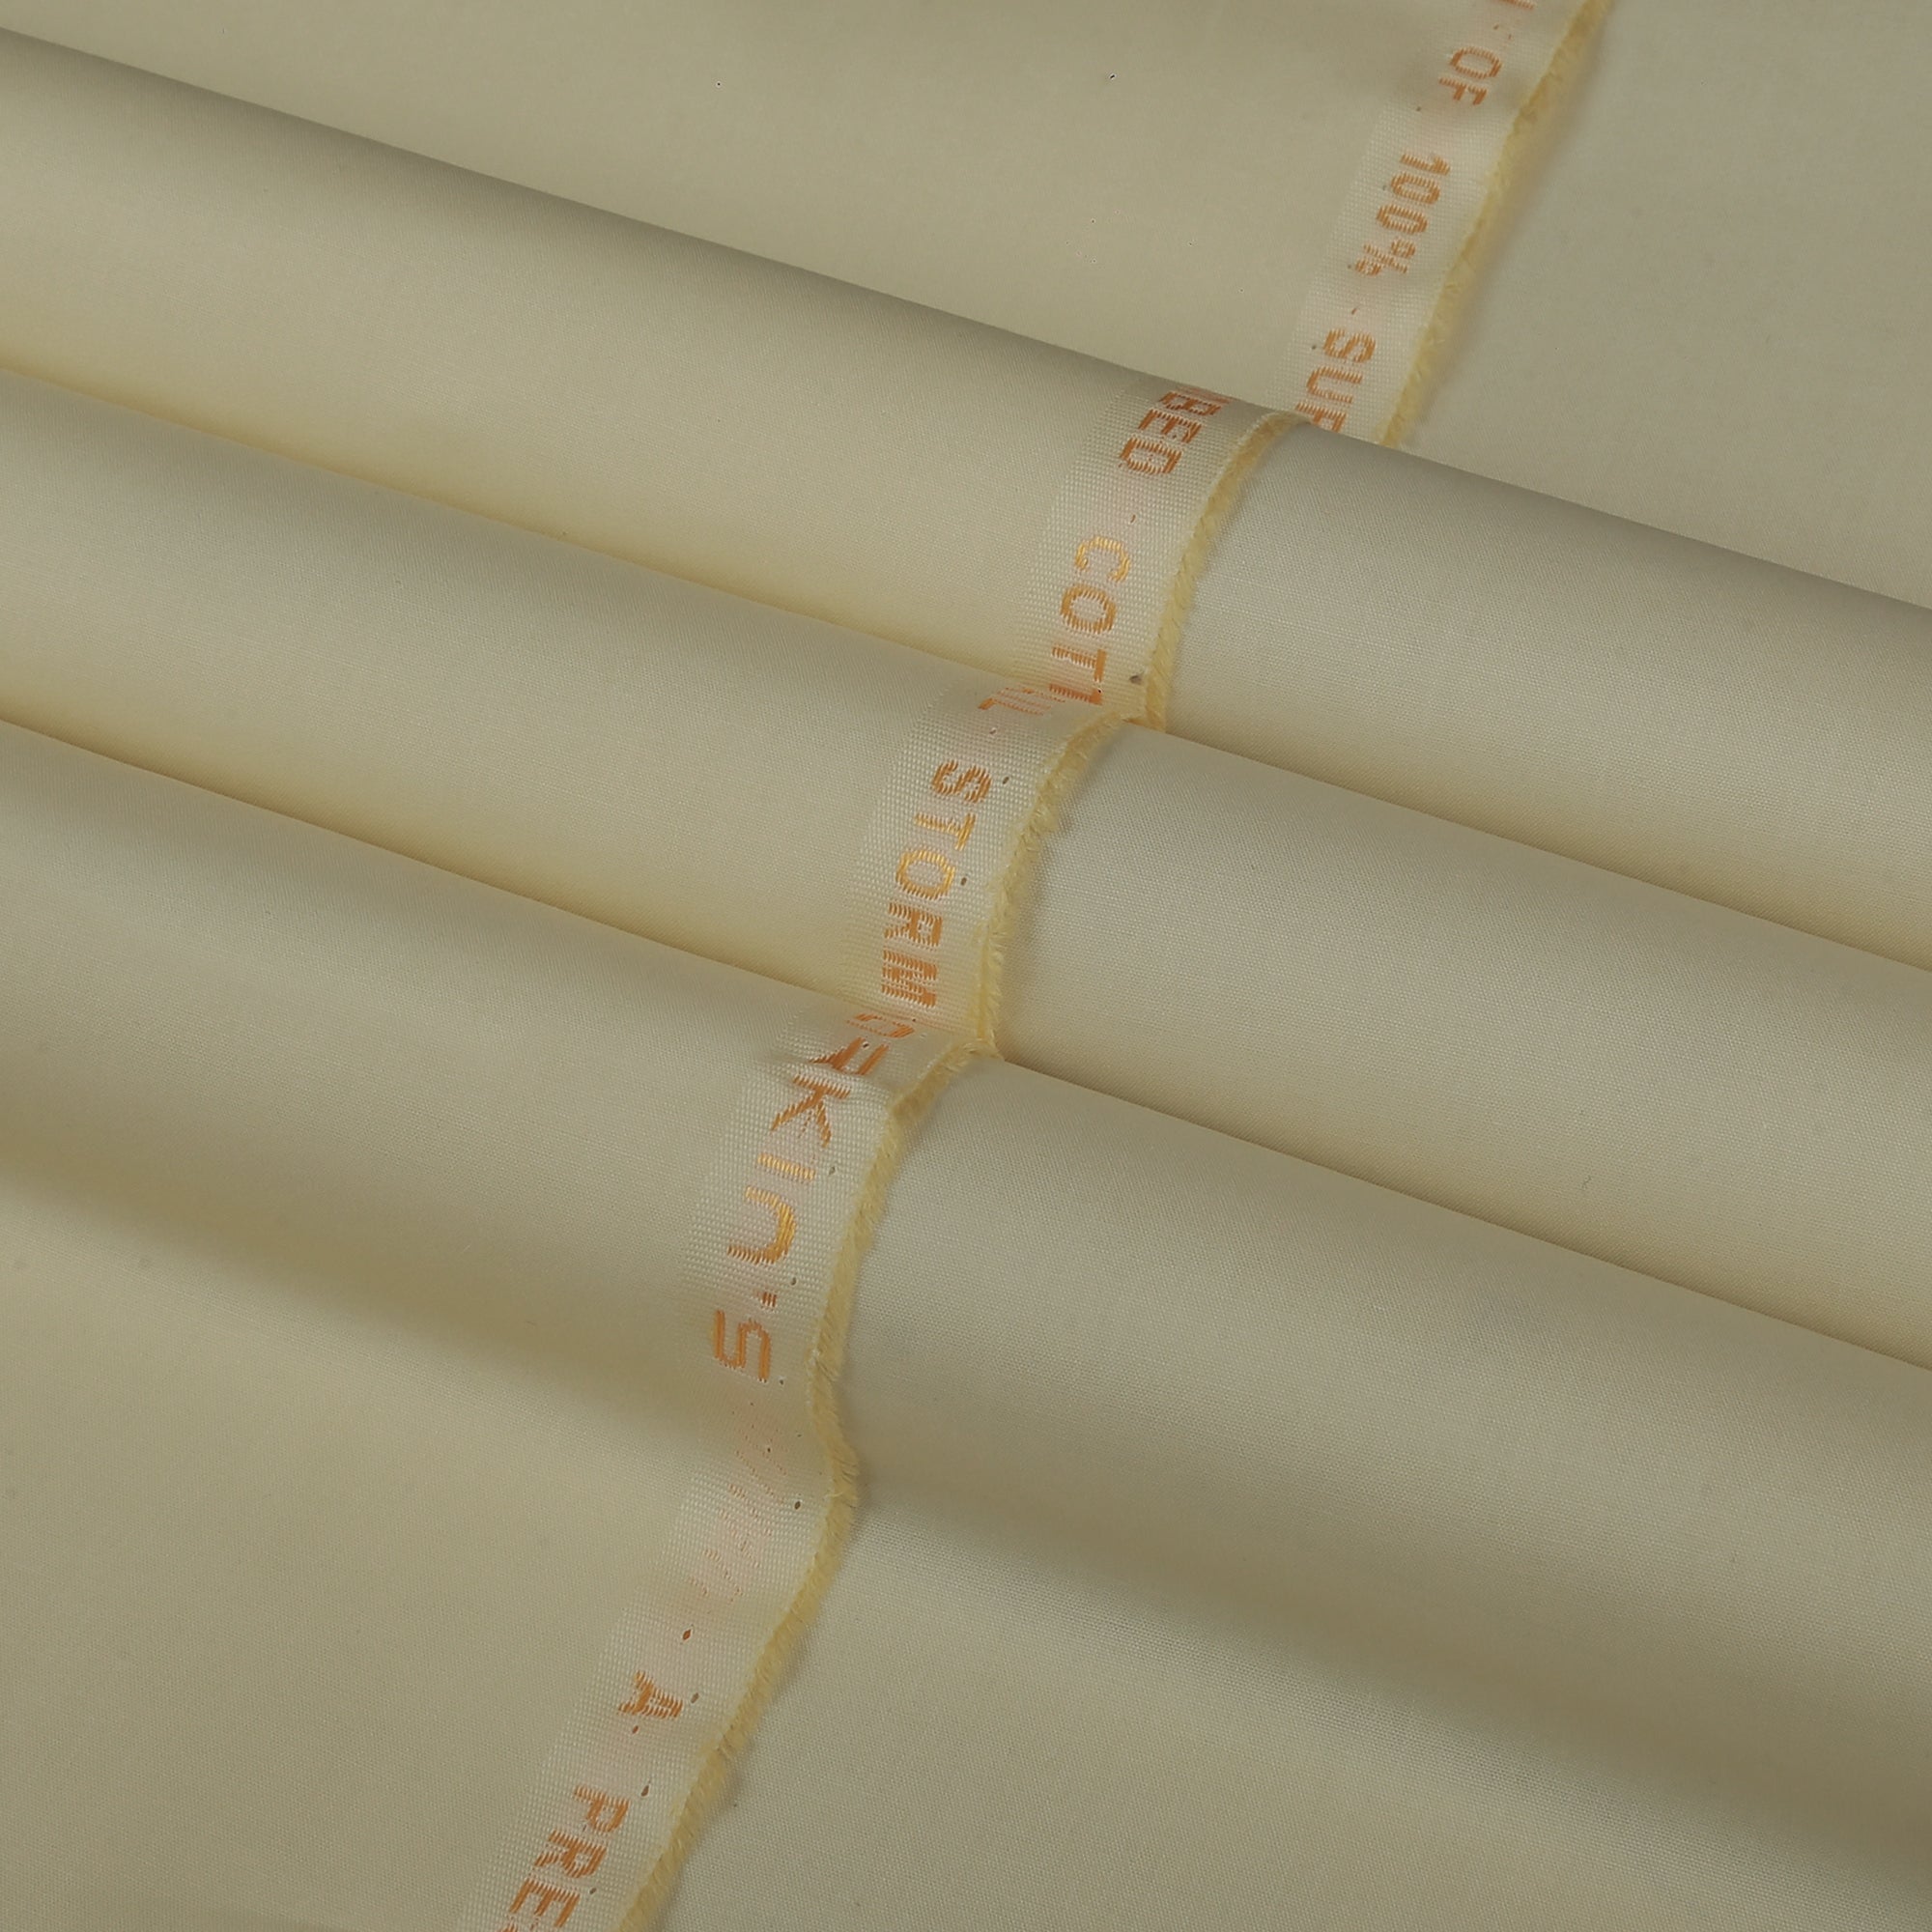 Hail Storm - Latha Cotton (4.5 Mtr) - Narkin's Textile Industries